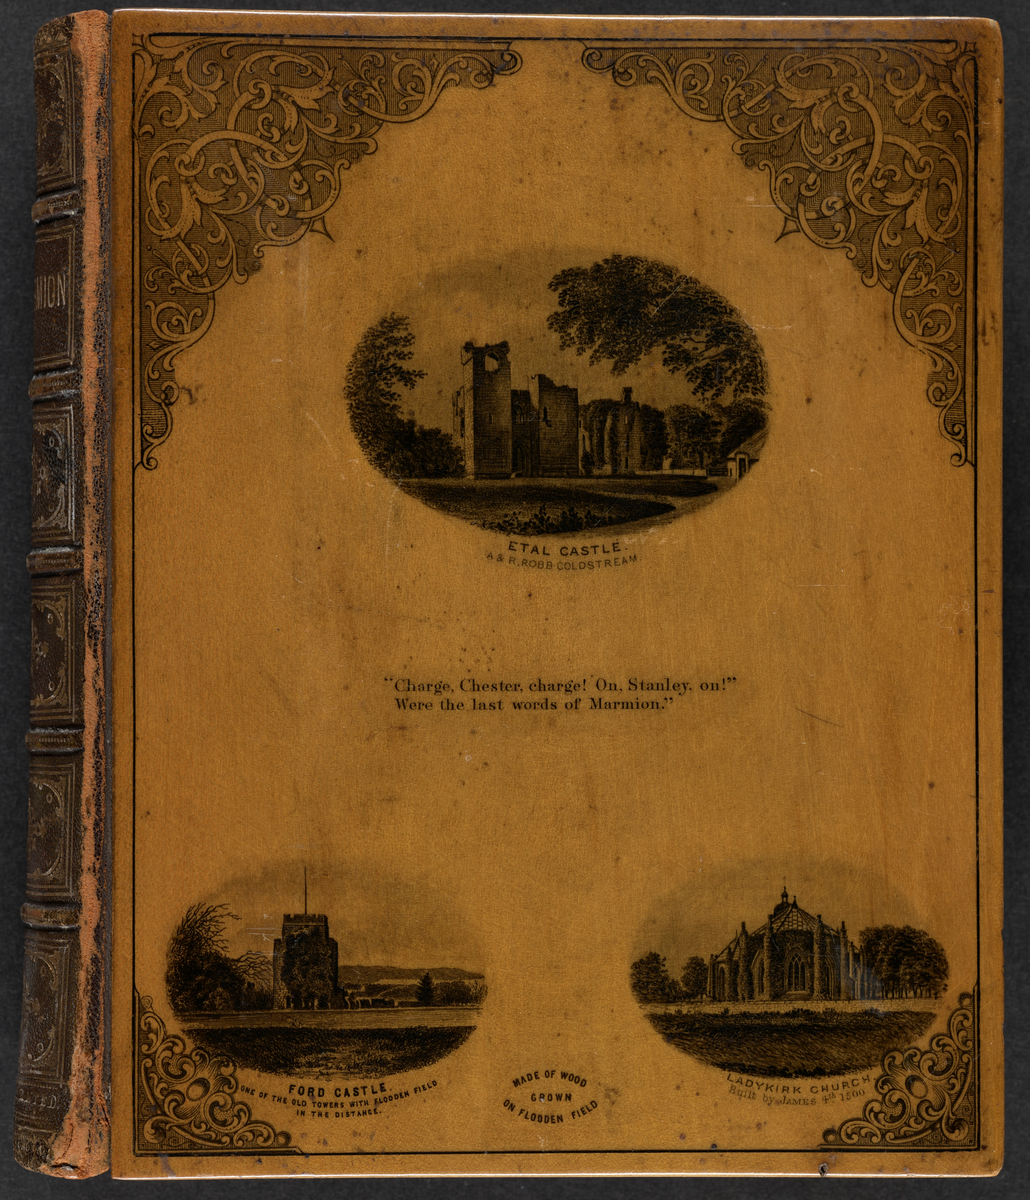 Diktbok skrevet av den skotske forfatteren Walter Scott. Diktene ble først gitt ut i 1808. Denne utgaven fra 1866 inneholder 15 albuminfotografier,  Bokens omslag er laget av tre.